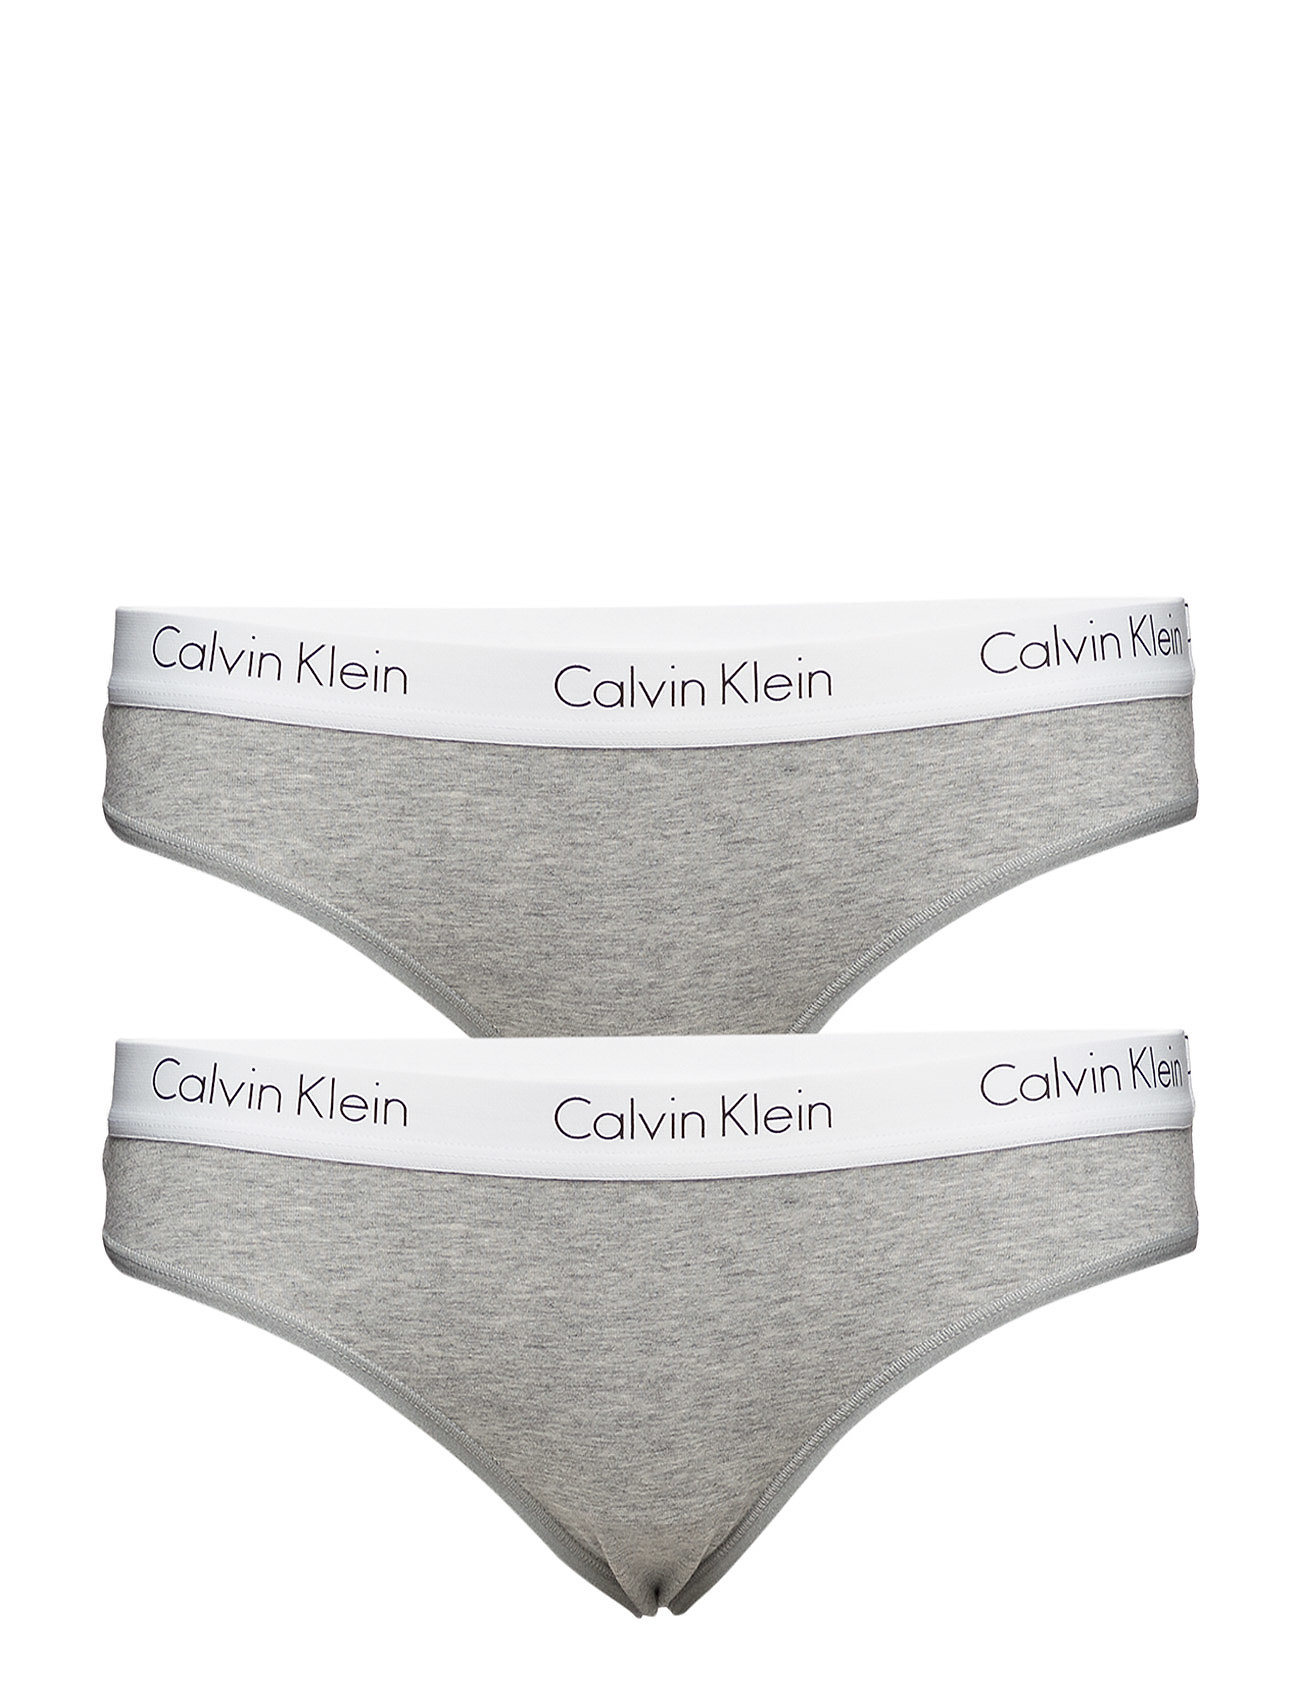 calvin klein gray thong